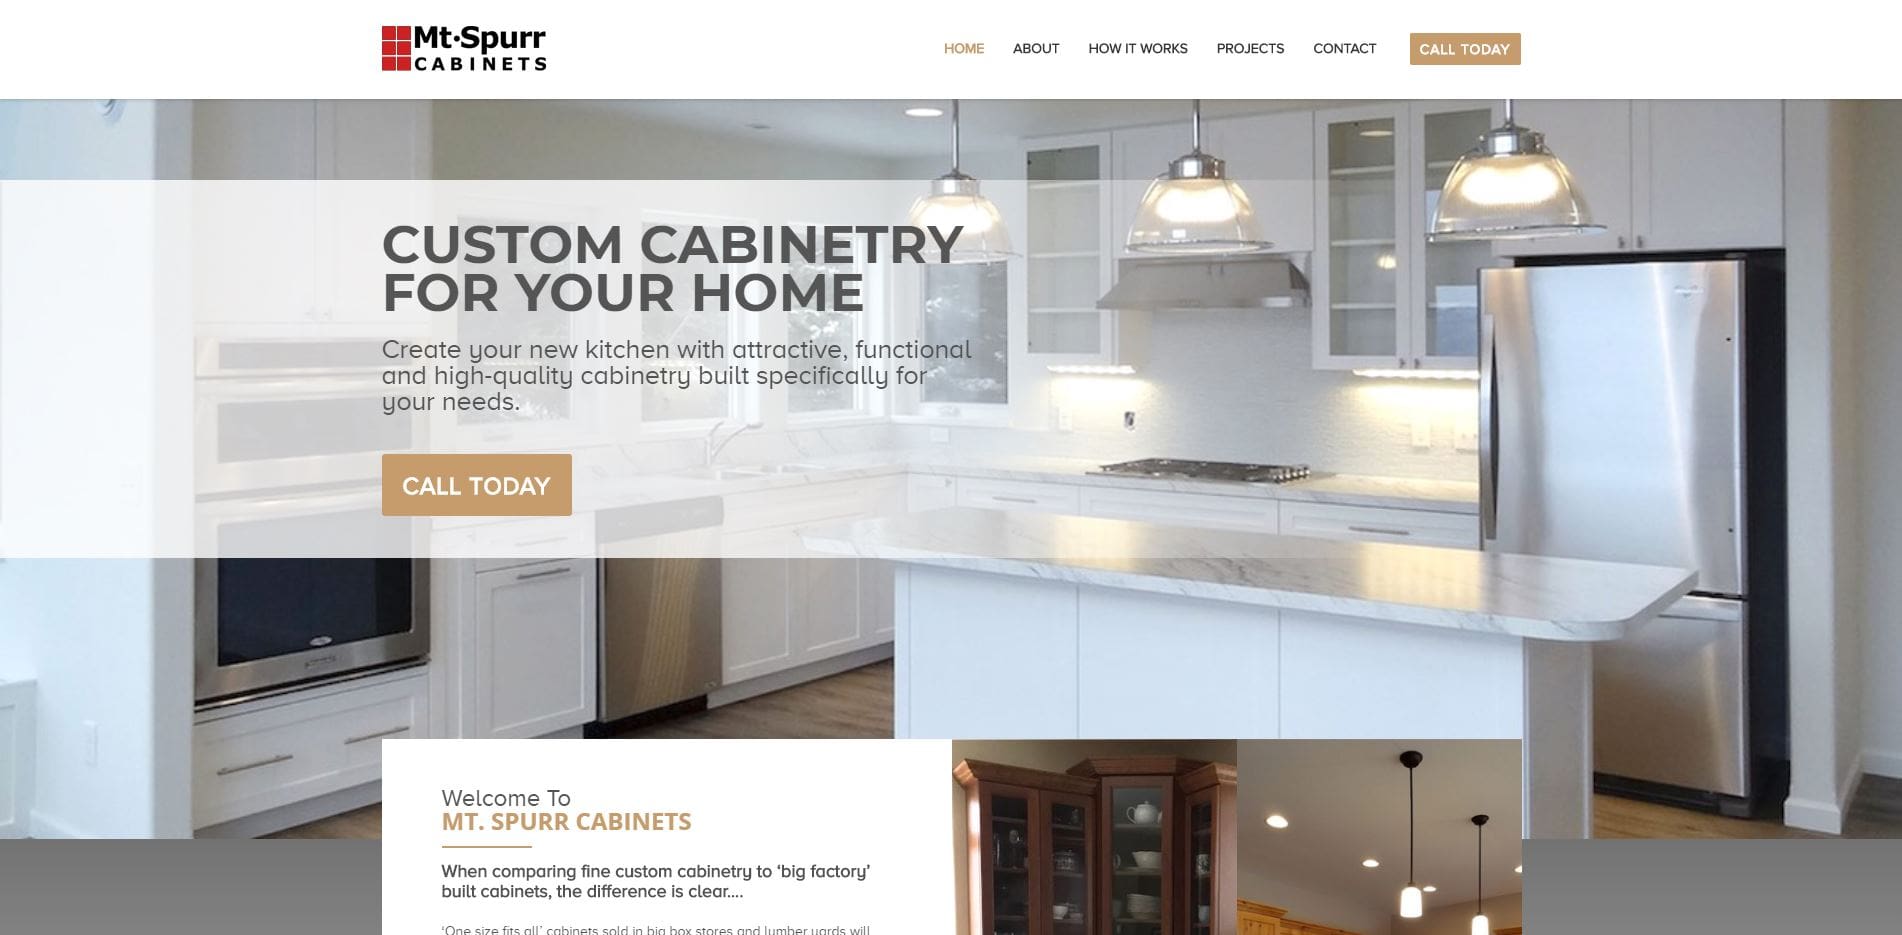 Mt. Spurr Cabinets Website Design